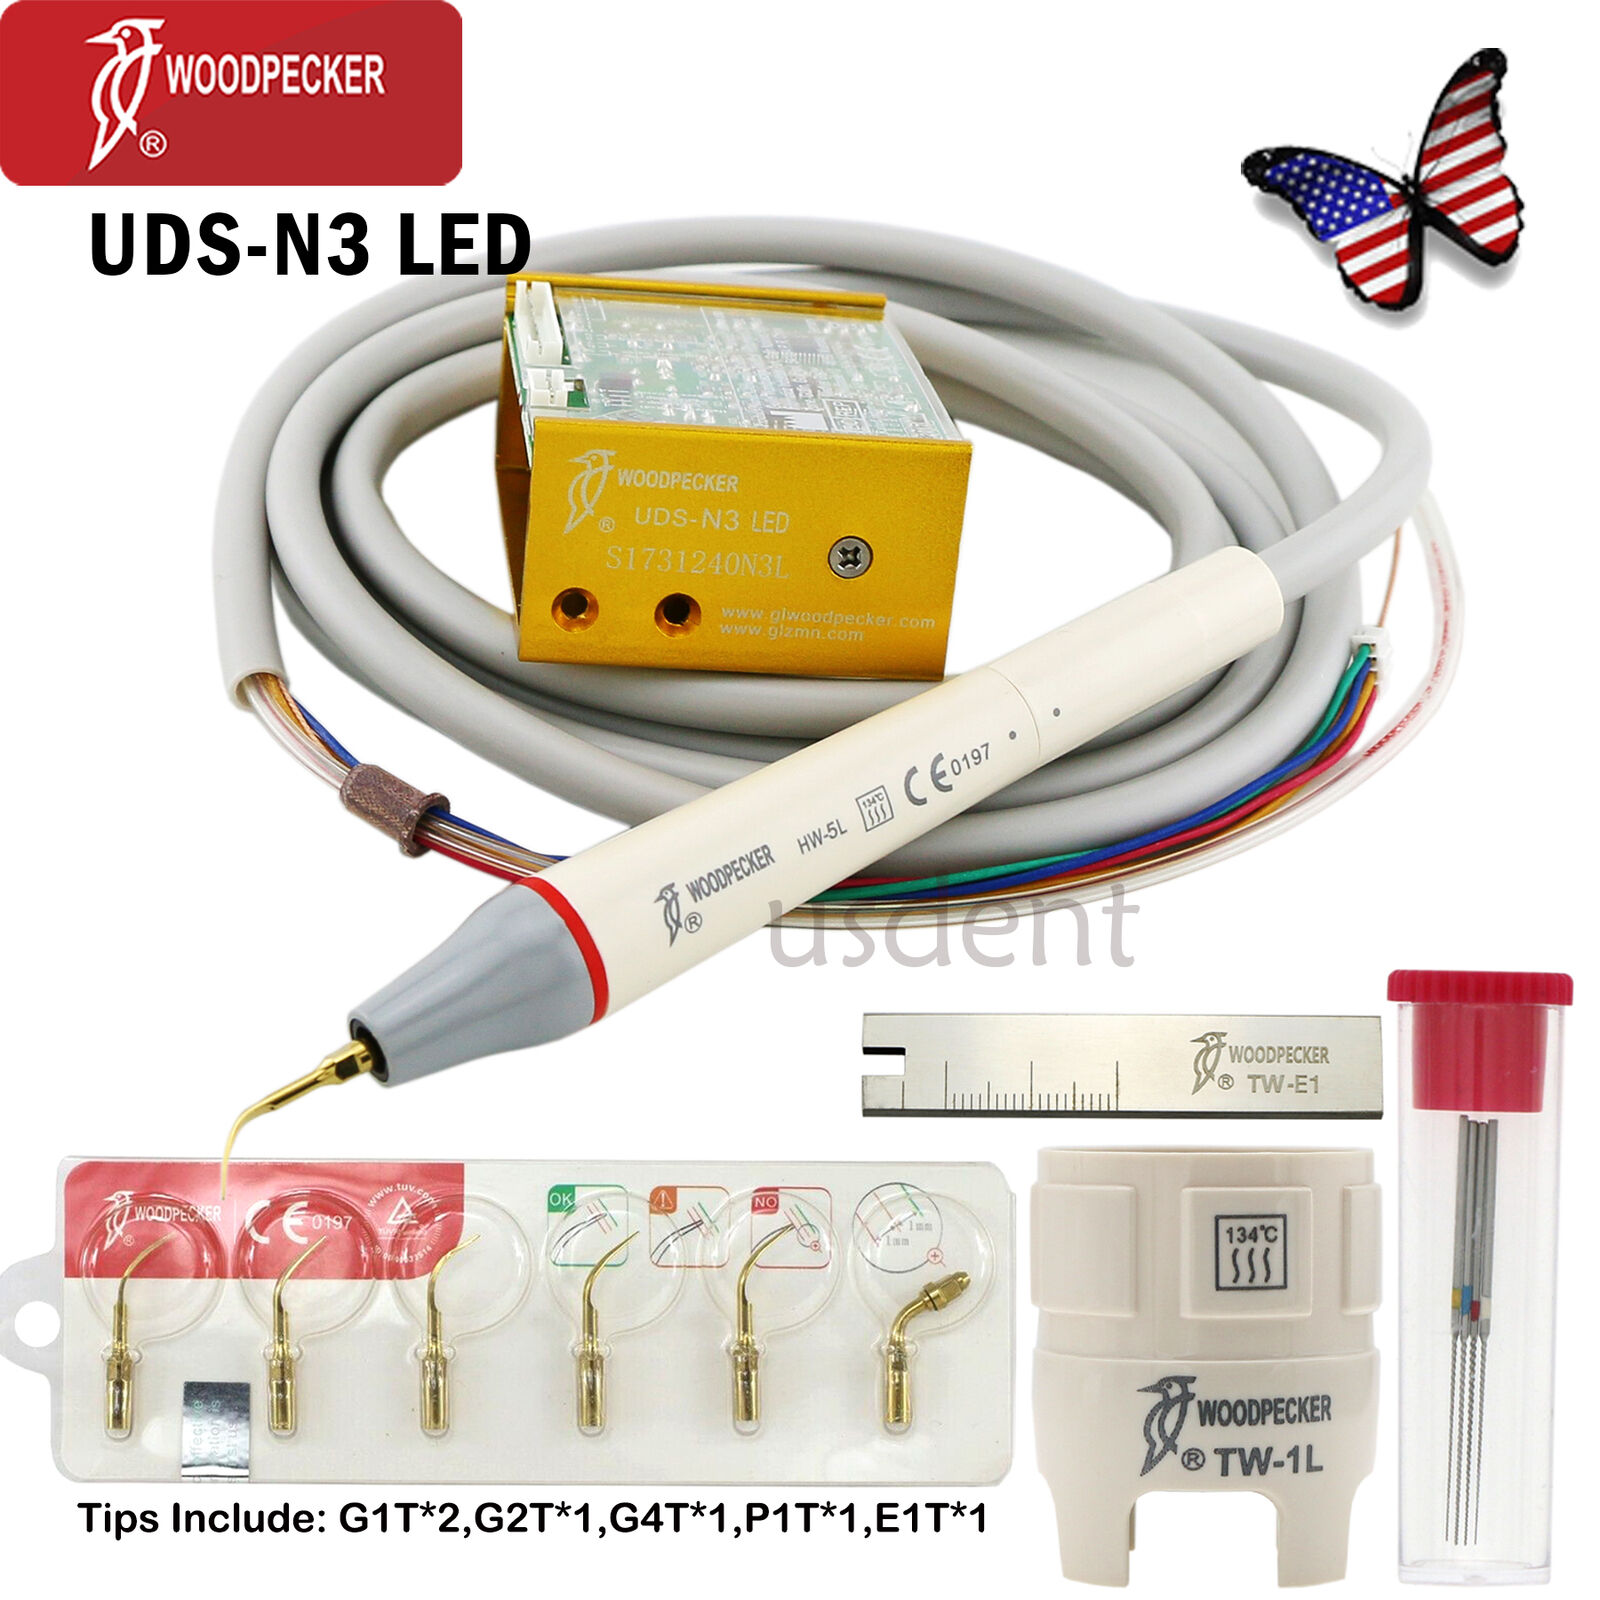 US Woodpecker Dental Ultrasonic Scaler Built-in Handpiece Fit EMS UDS UDS-N3 LED